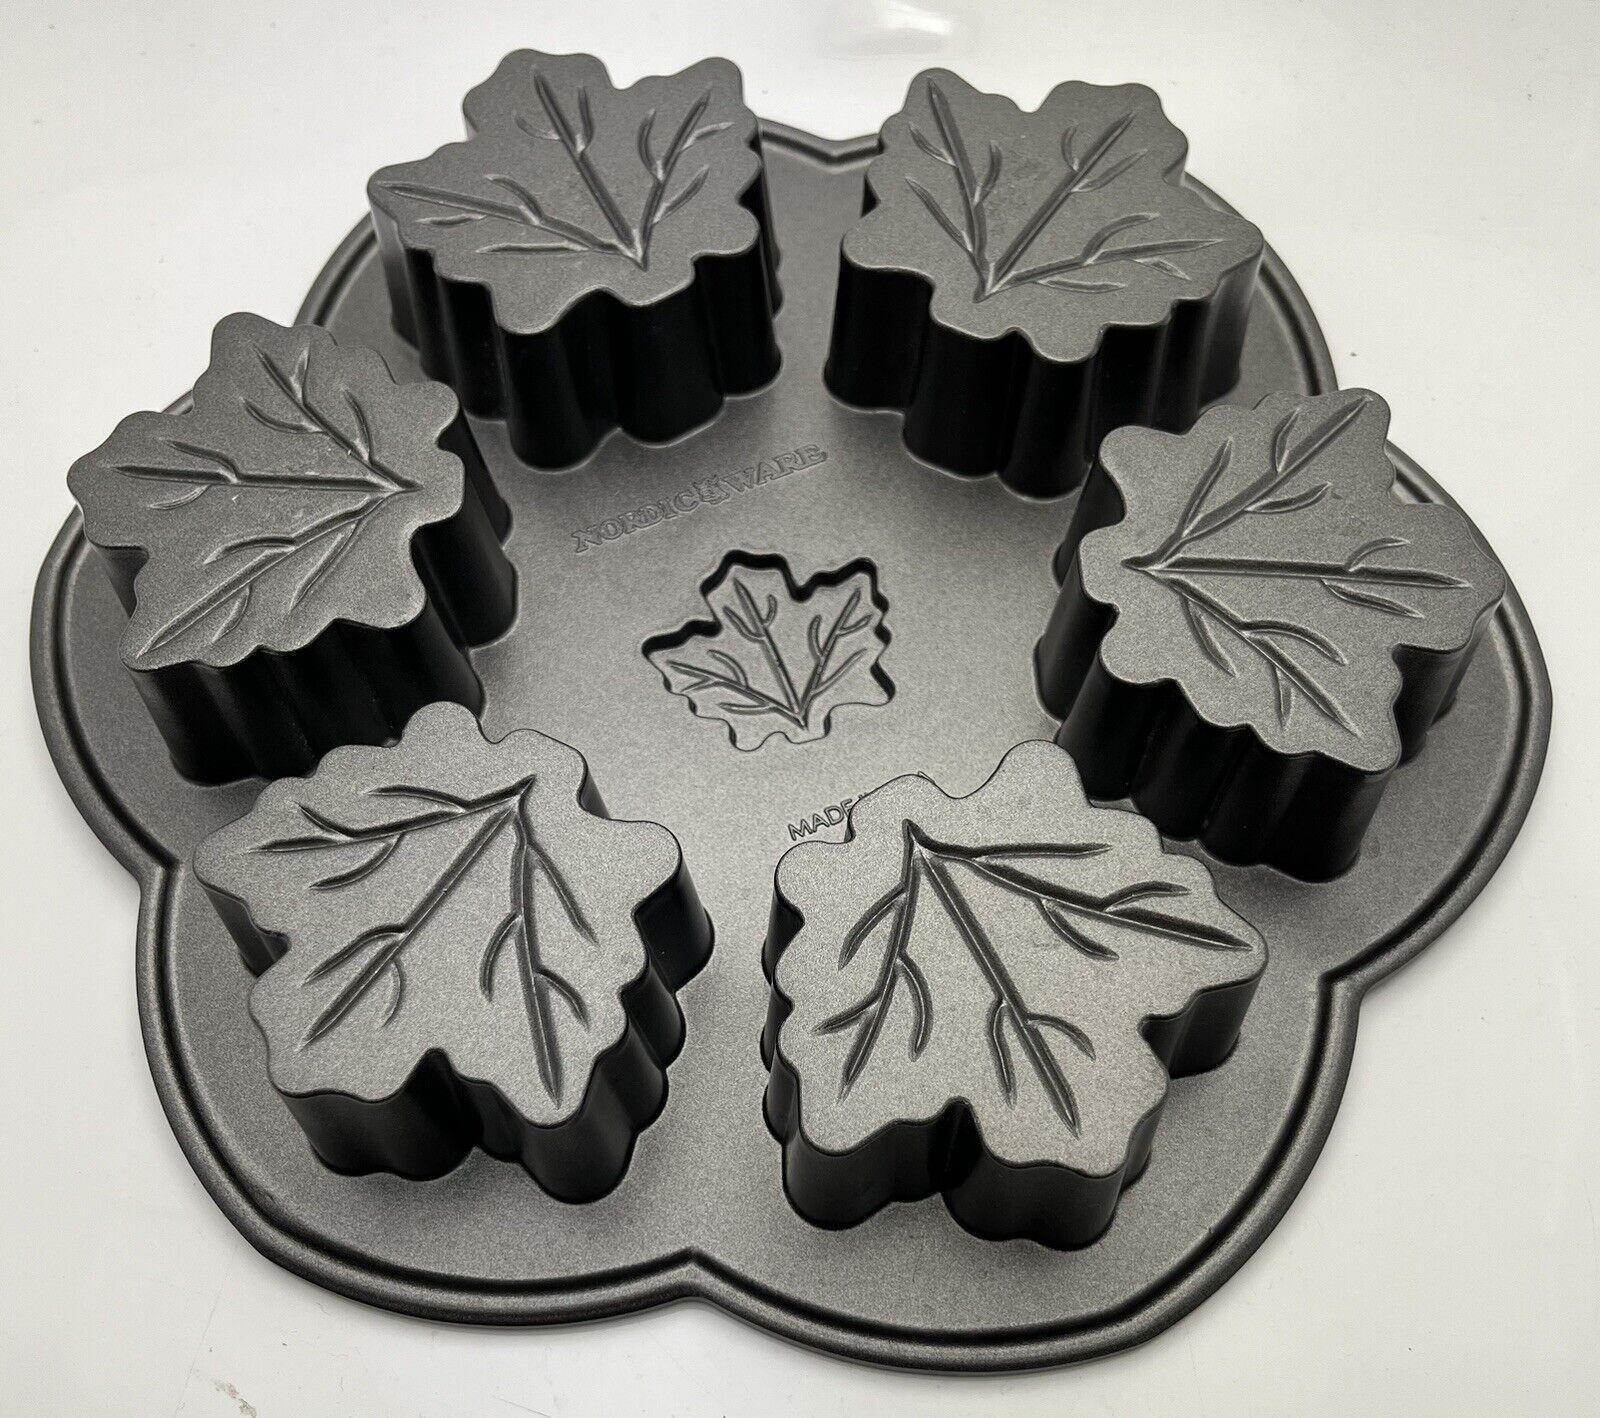 William Sonoma Nordic Ware Maple Leaf Cast Aluminum Cake Mold Muffin Baking Pan